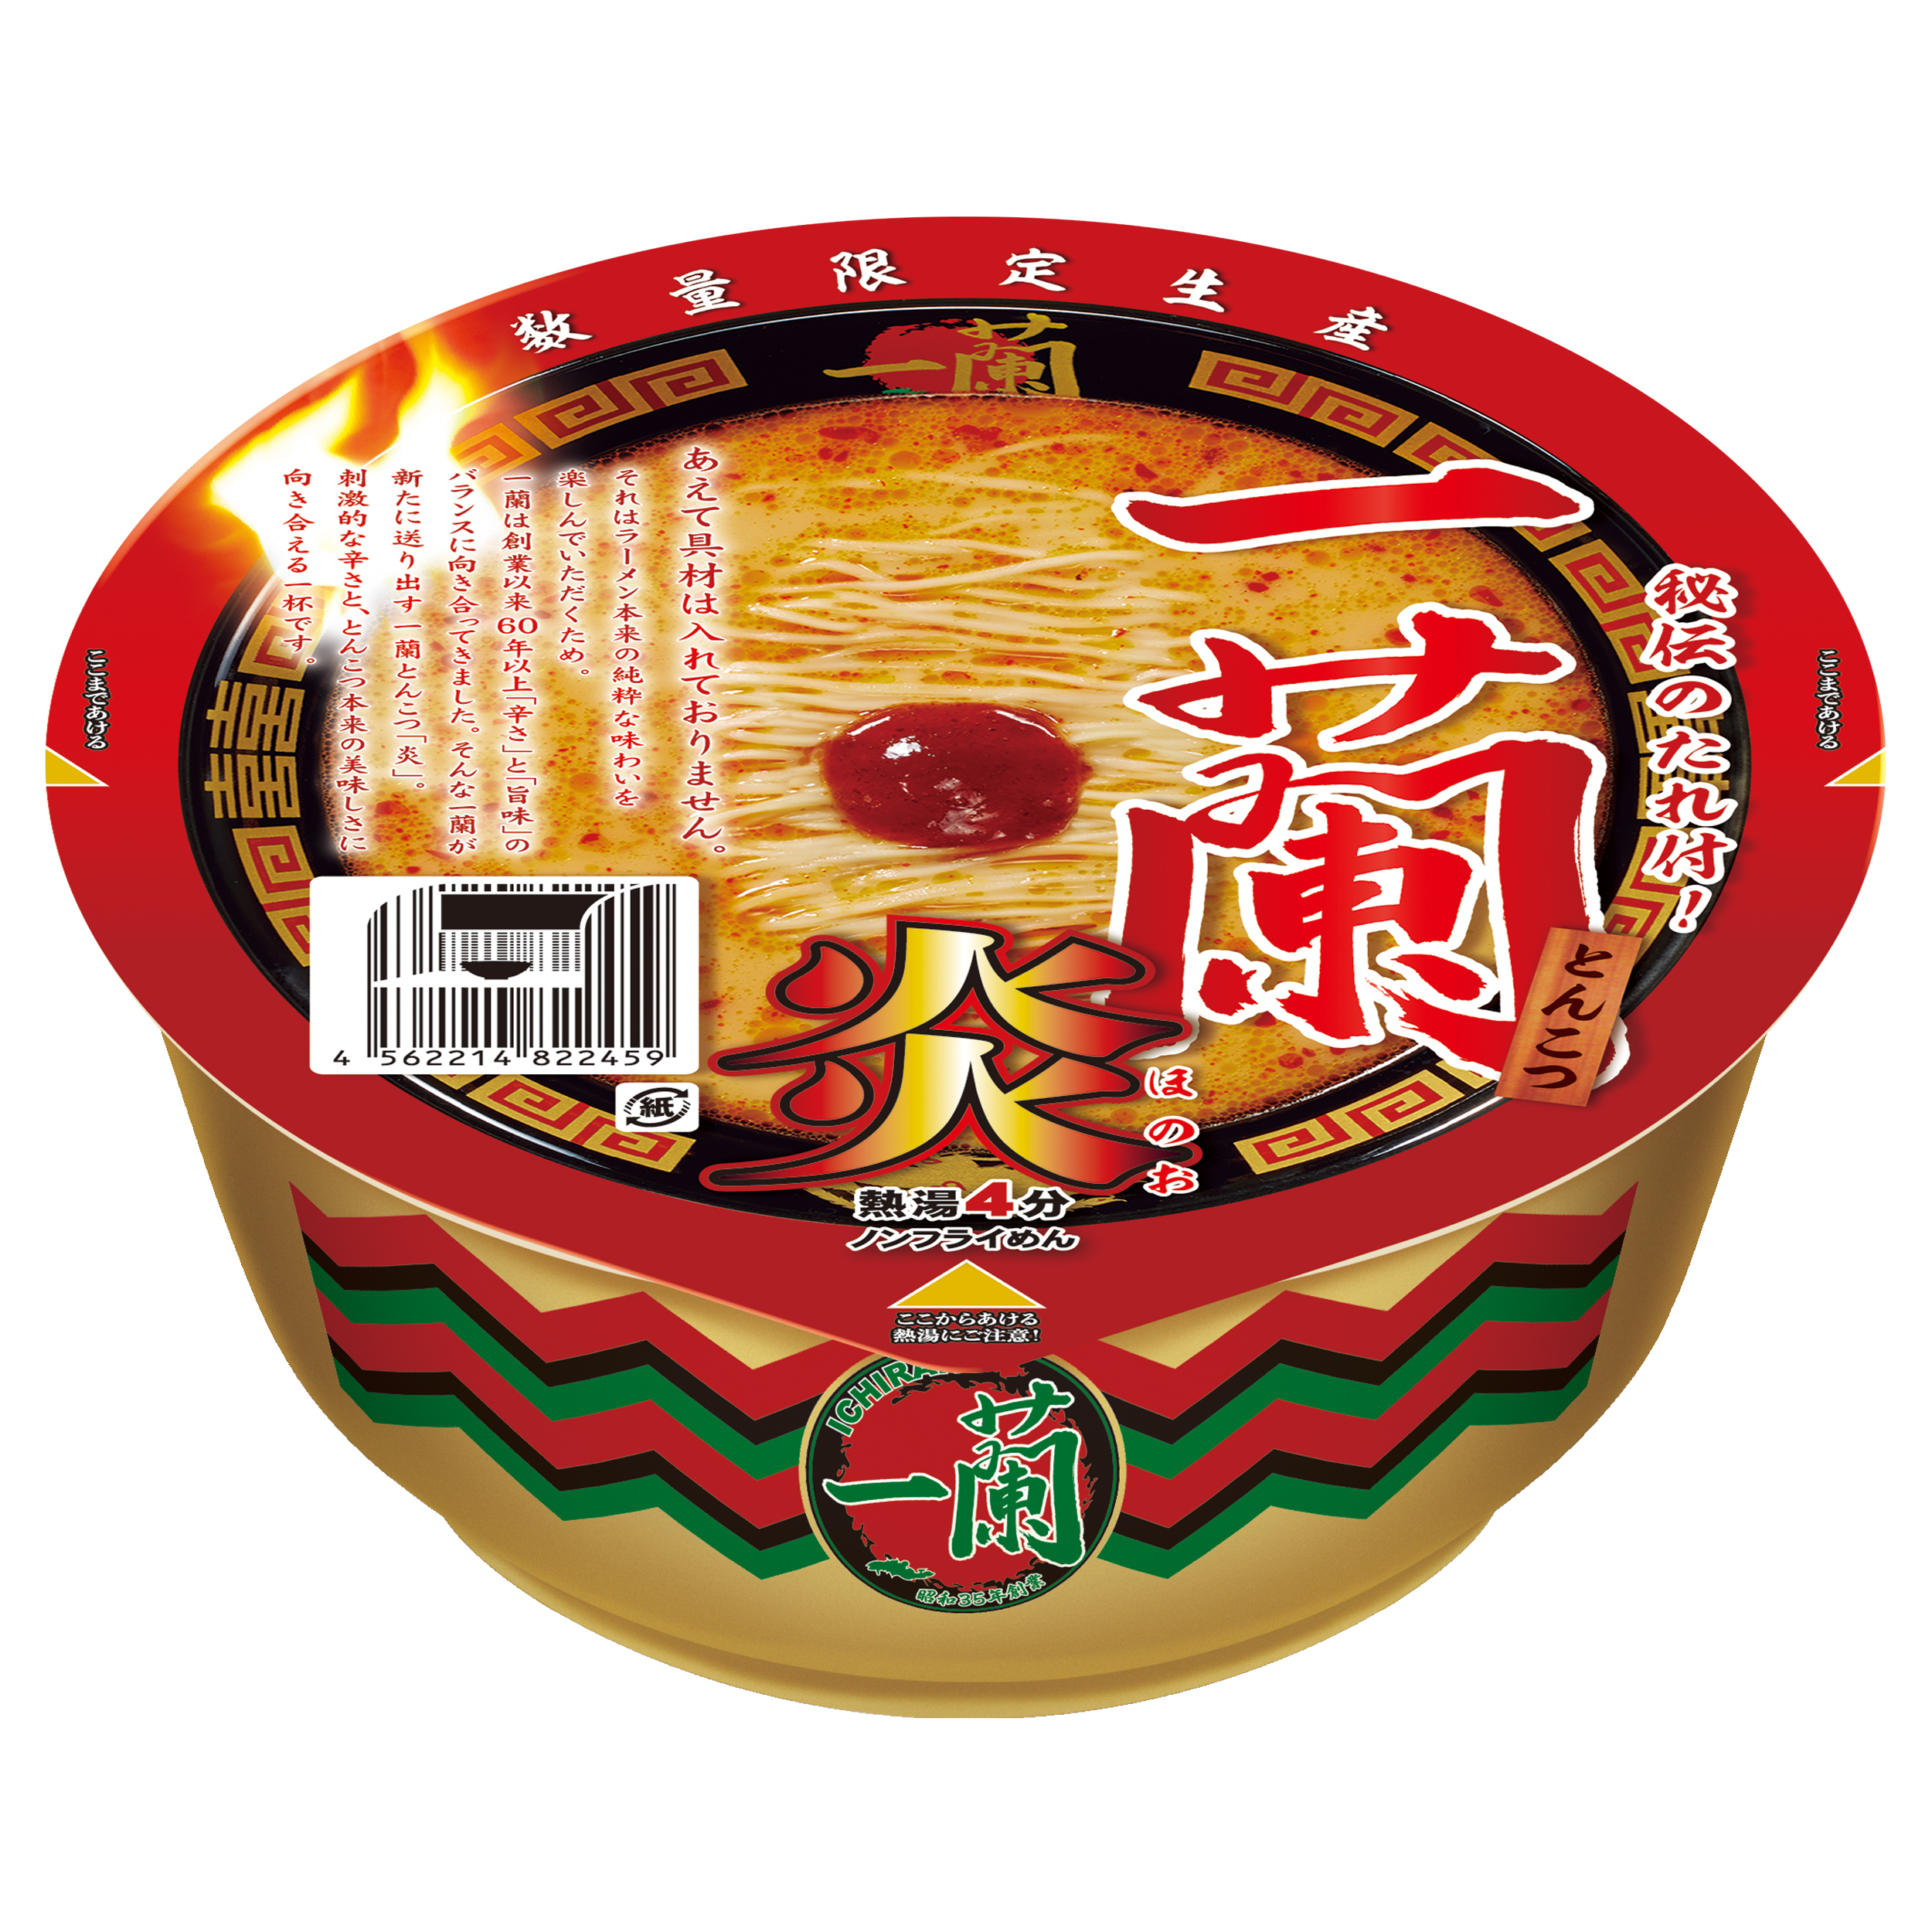 カップ麺「一蘭とんこつ炎」パッケージ